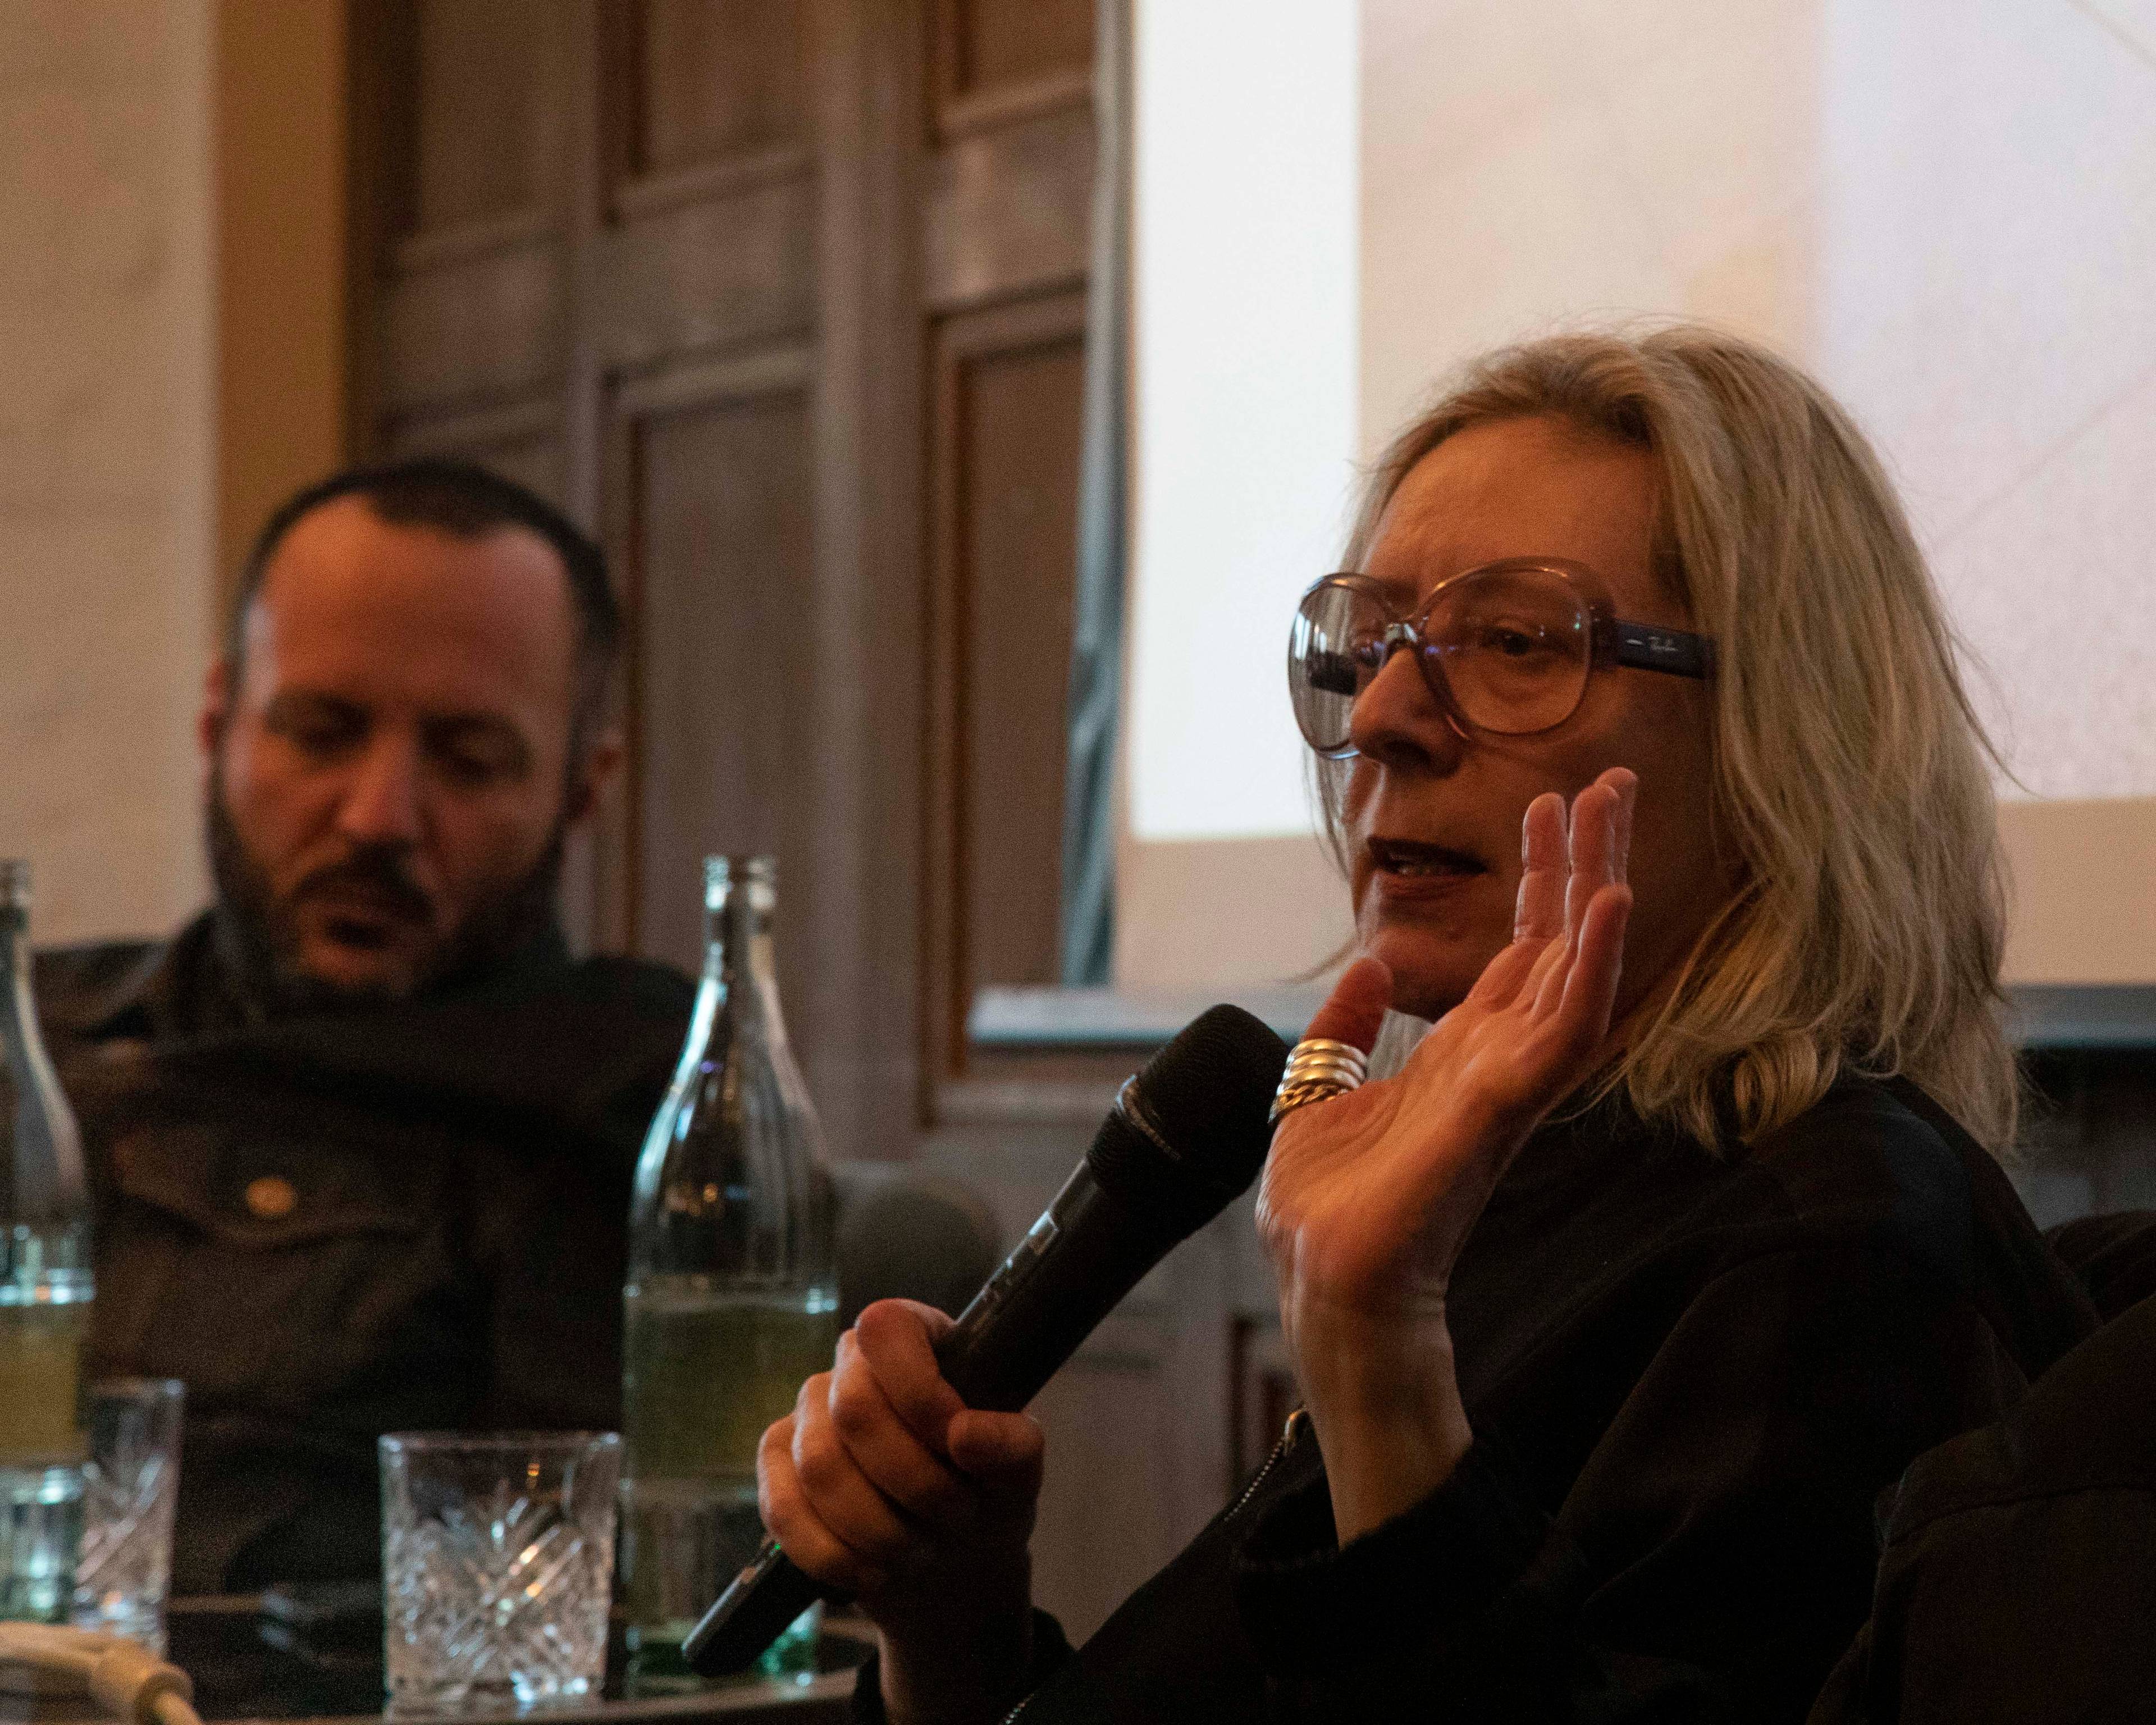 Spike Talk: Monica Bonvicini in conversation with Francesco Tenaglia